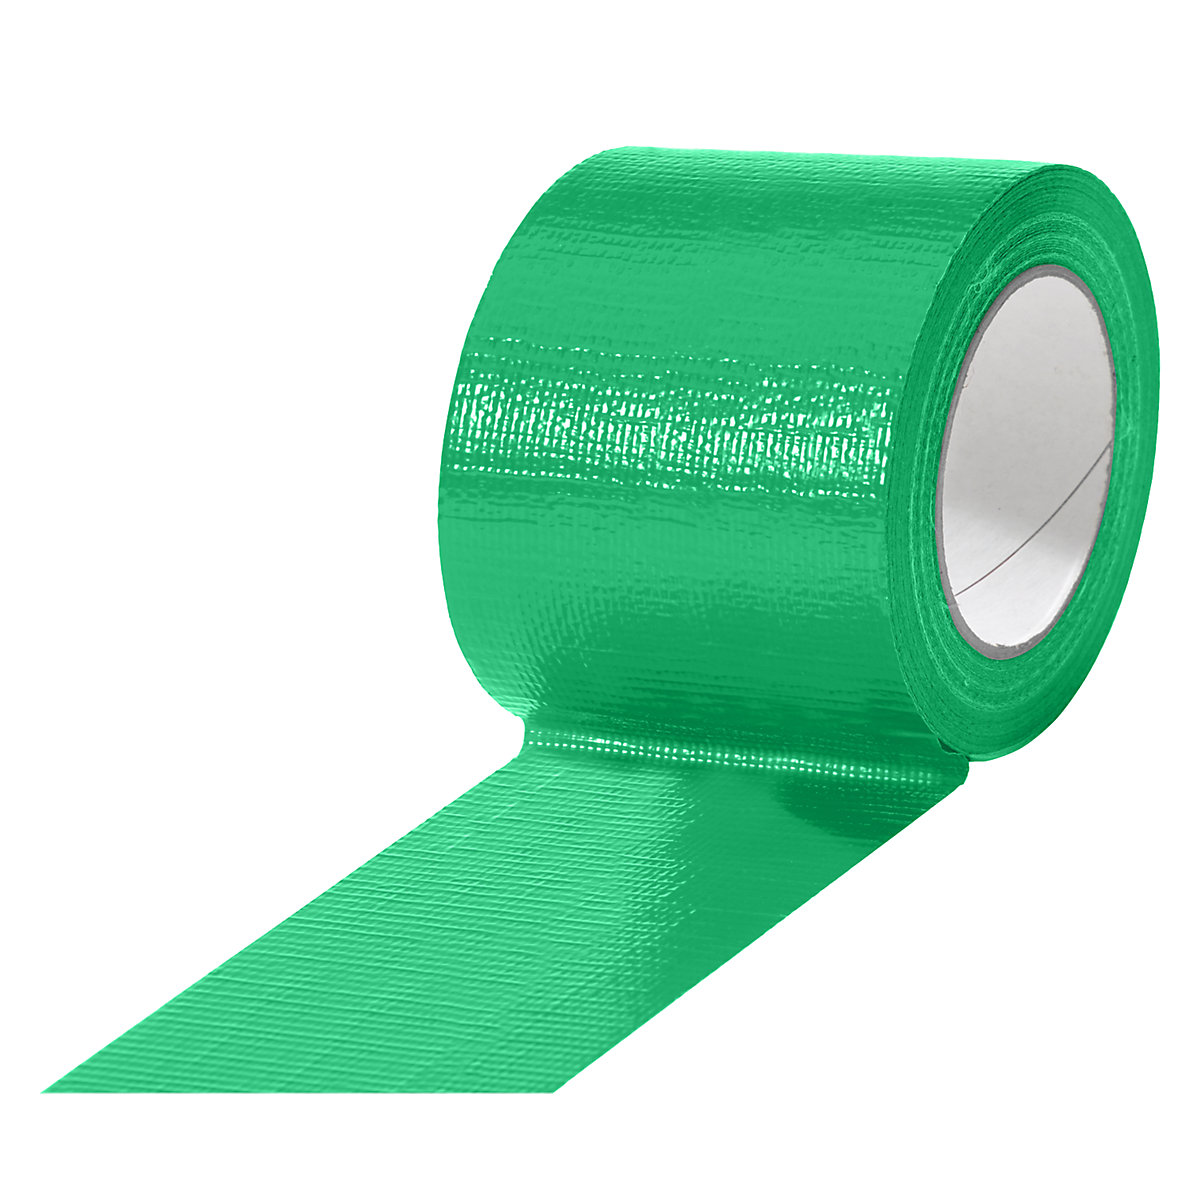 Traka od tkanine, u različitim bojama, pak. 12 rola, u zelenoj boji, širina trake 75 mm-14